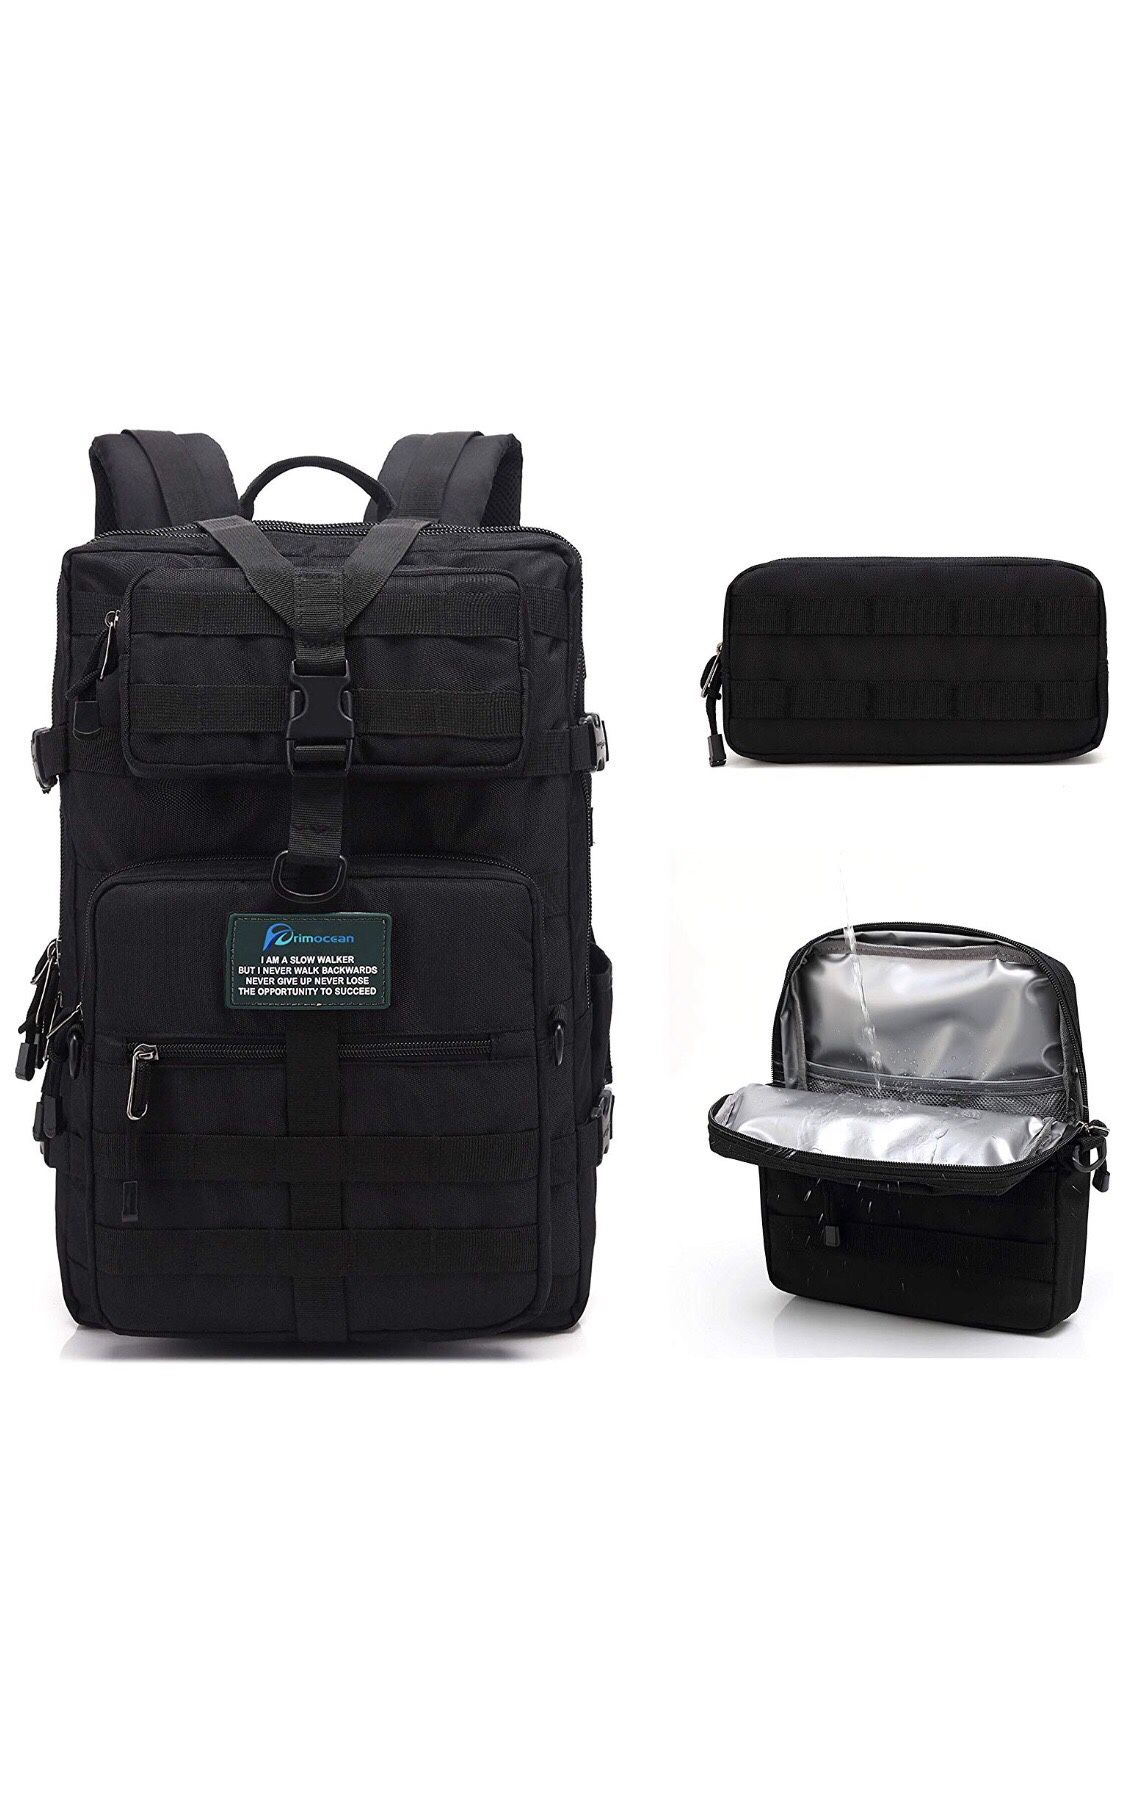 PRIMOCEAN Backpack 40L-50L